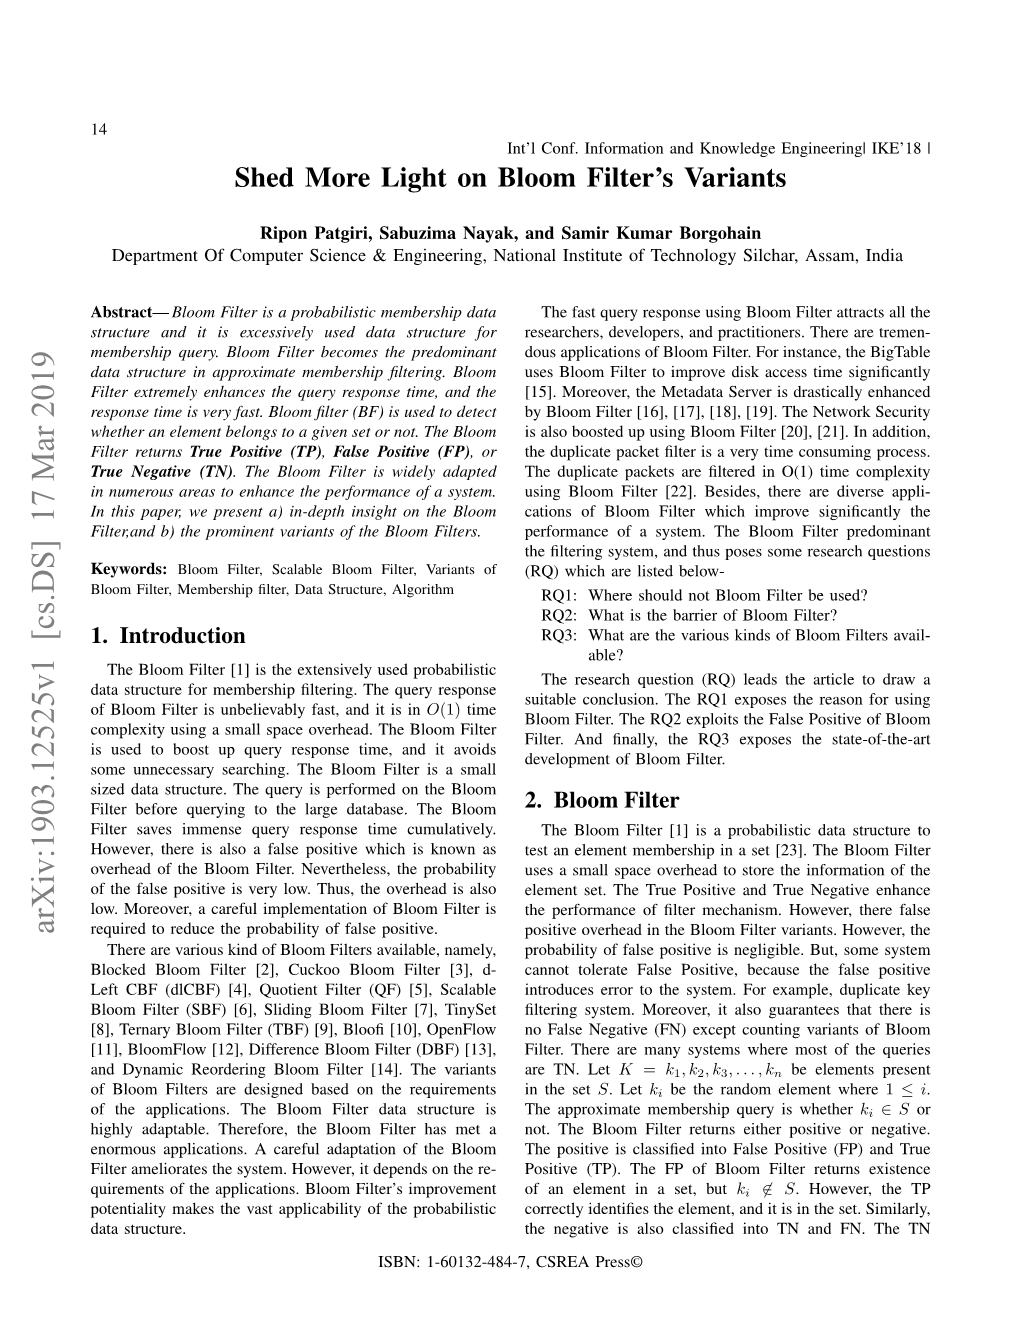 Shed More Light on Bloom Filter's Variants